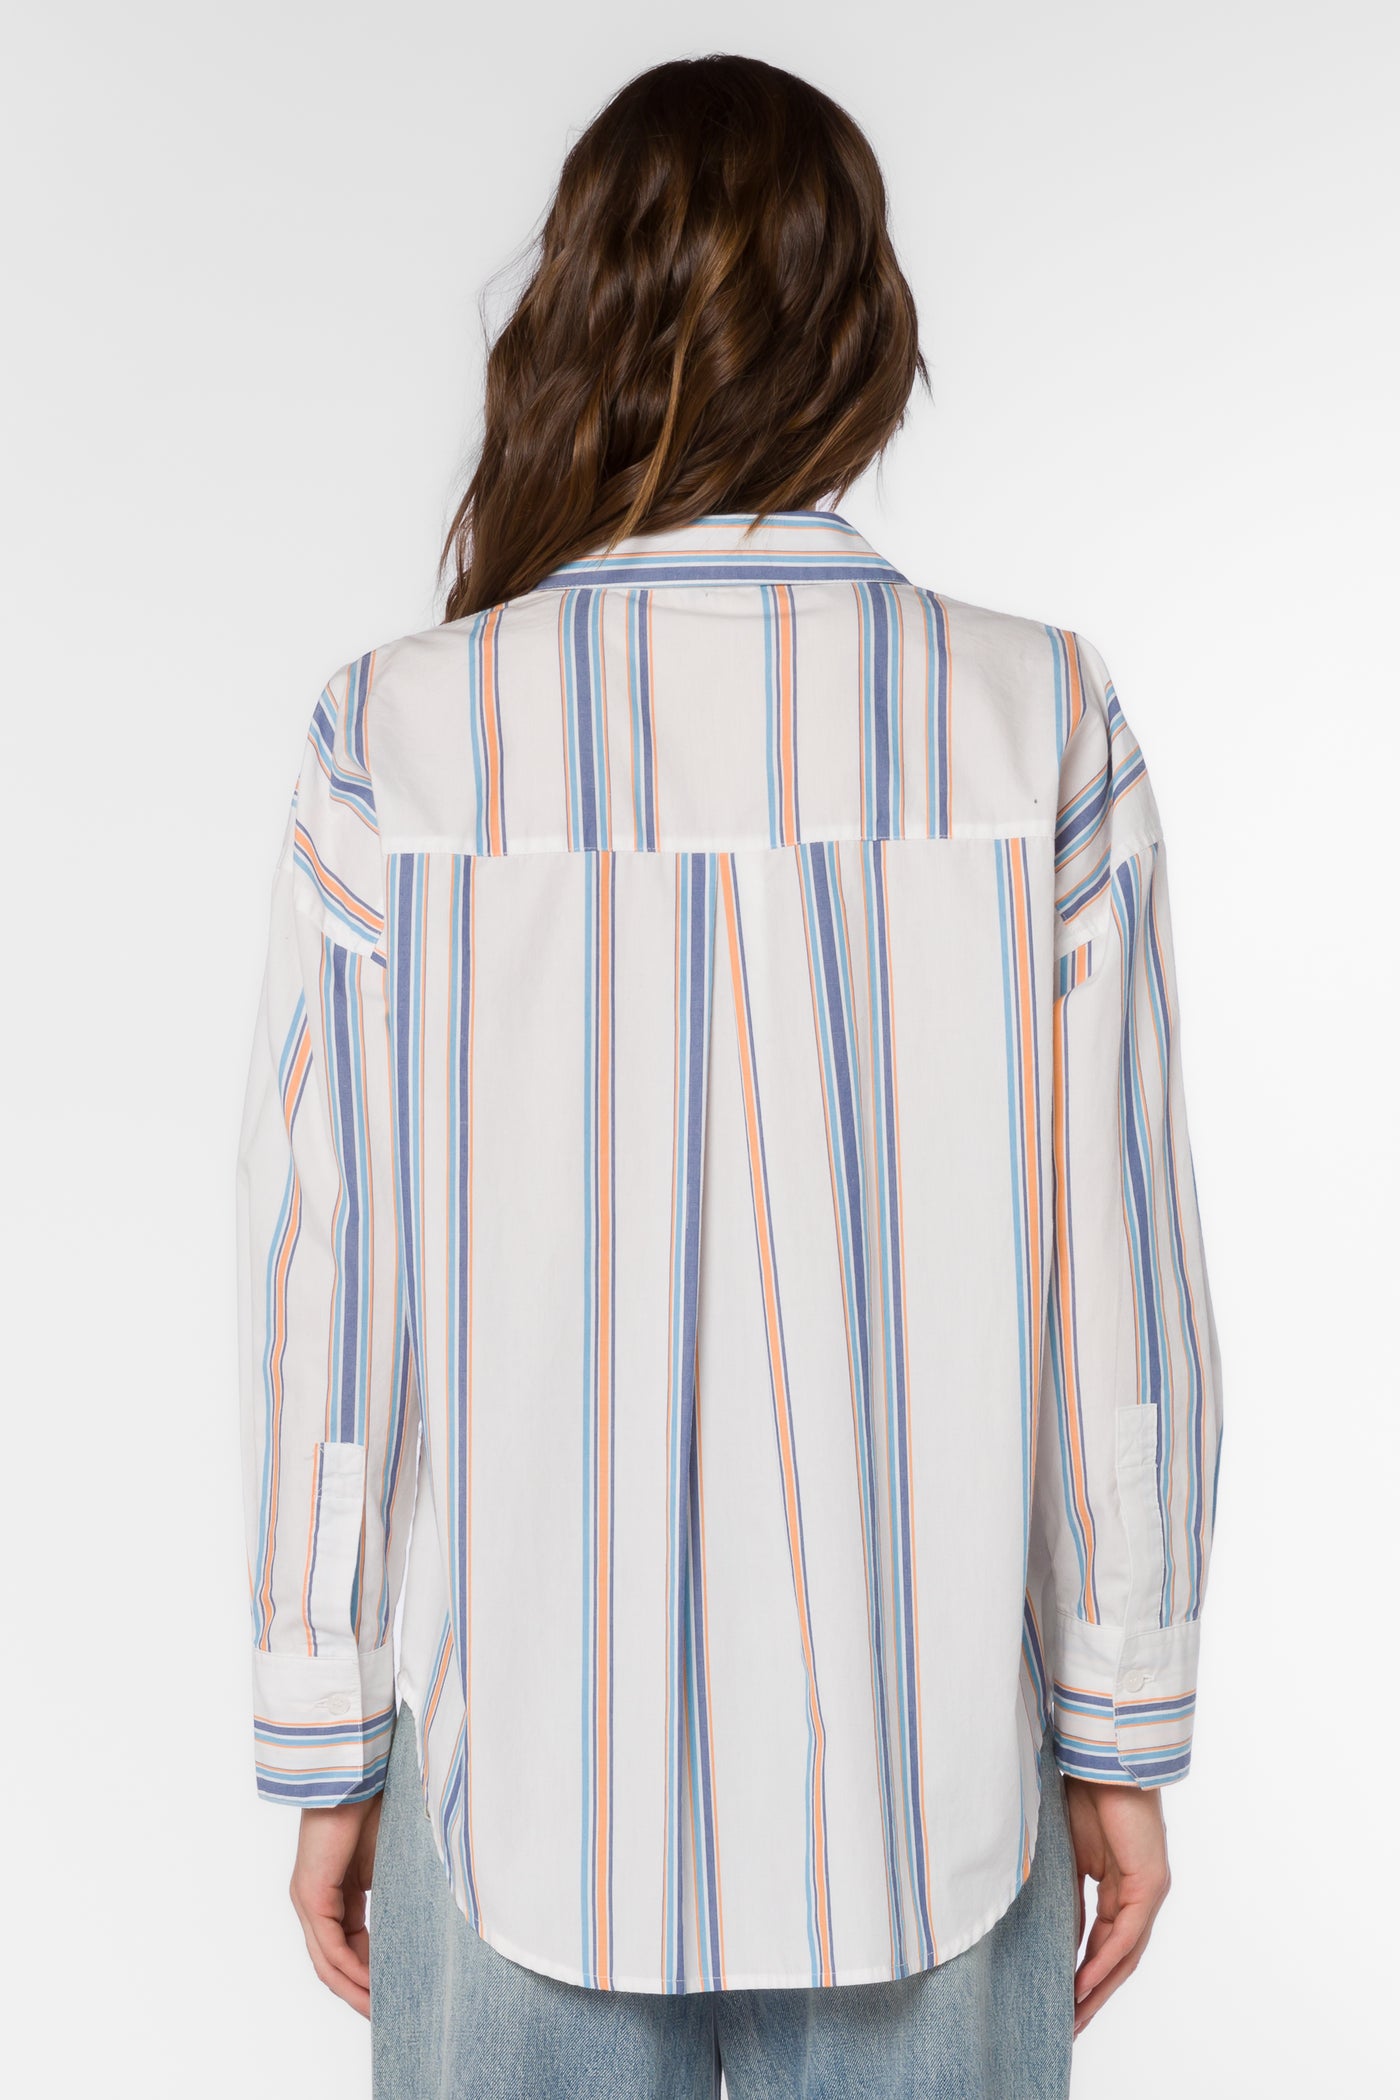 Mitch Blue Stripe Shirt - Tops - Velvet Heart Clothing